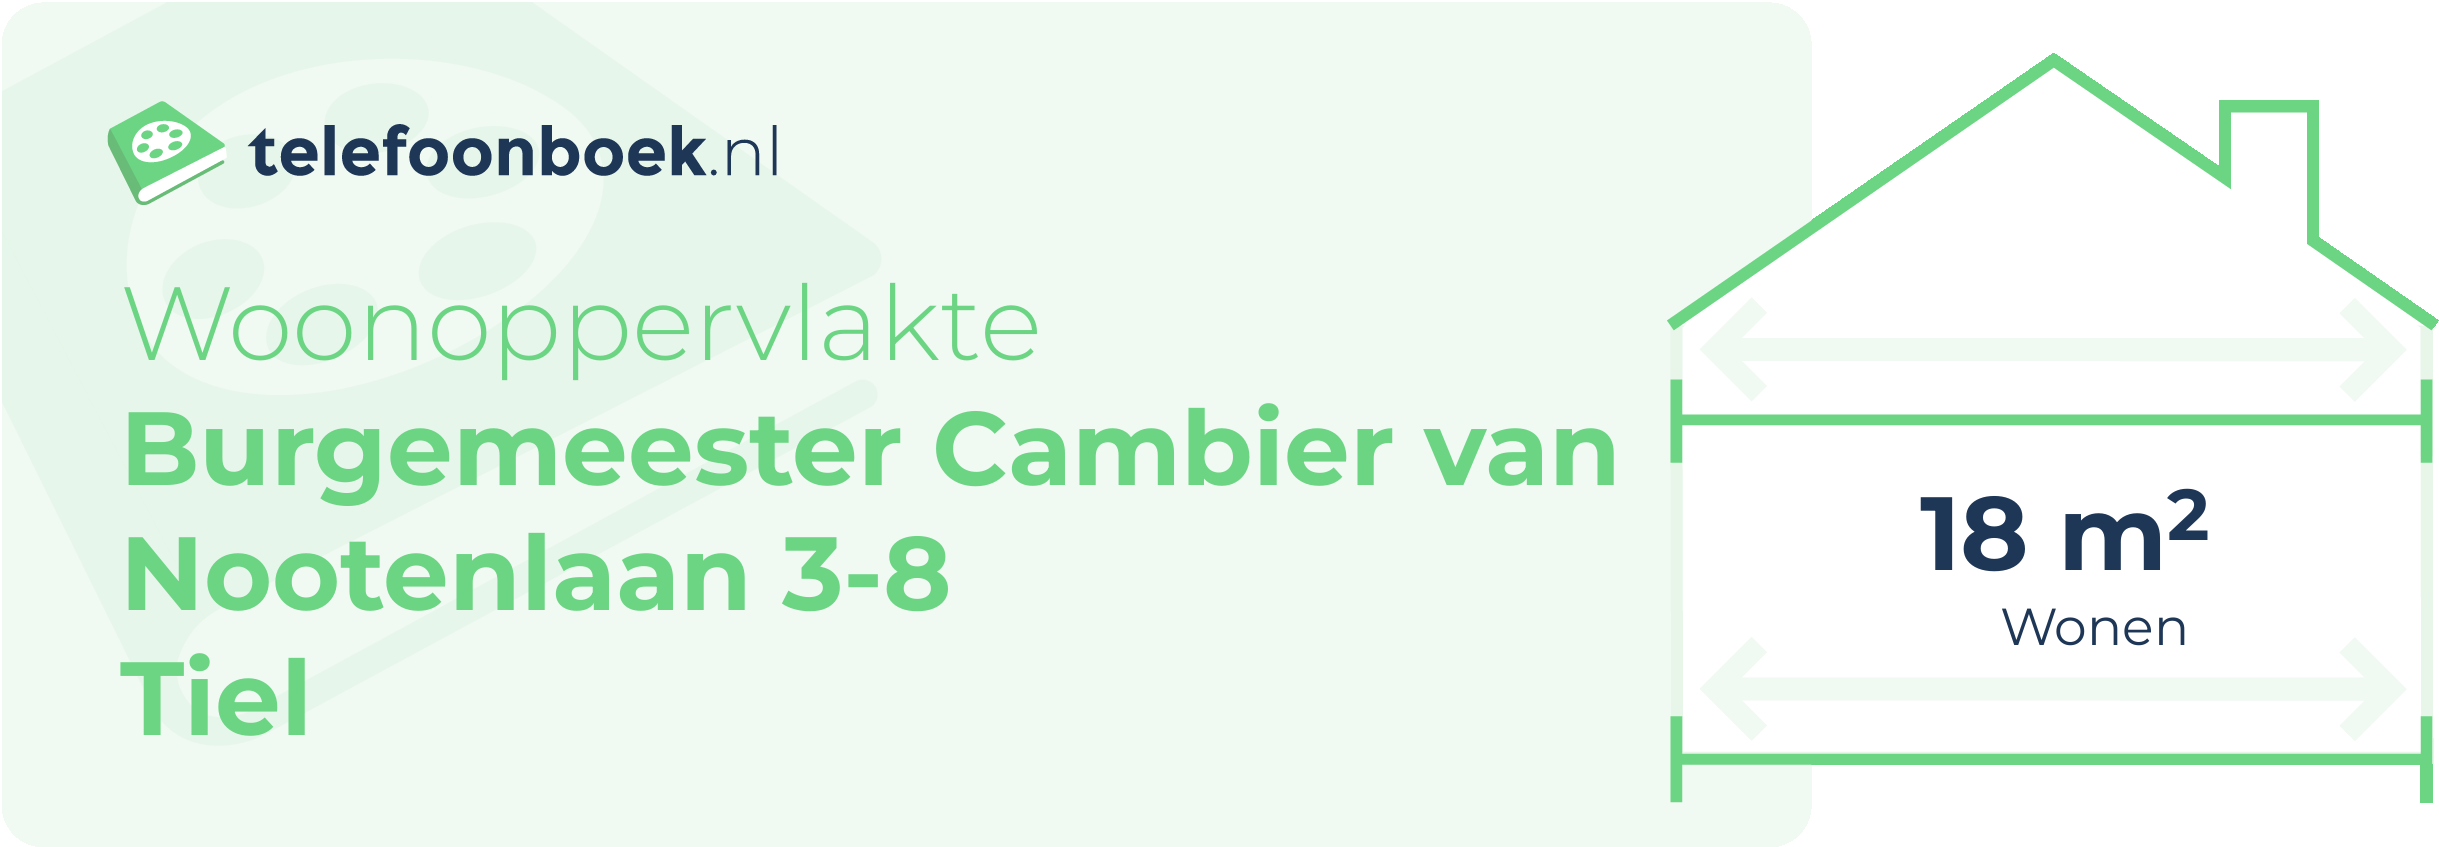 Woonoppervlakte Burgemeester Cambier Van Nootenlaan 3-8 Tiel